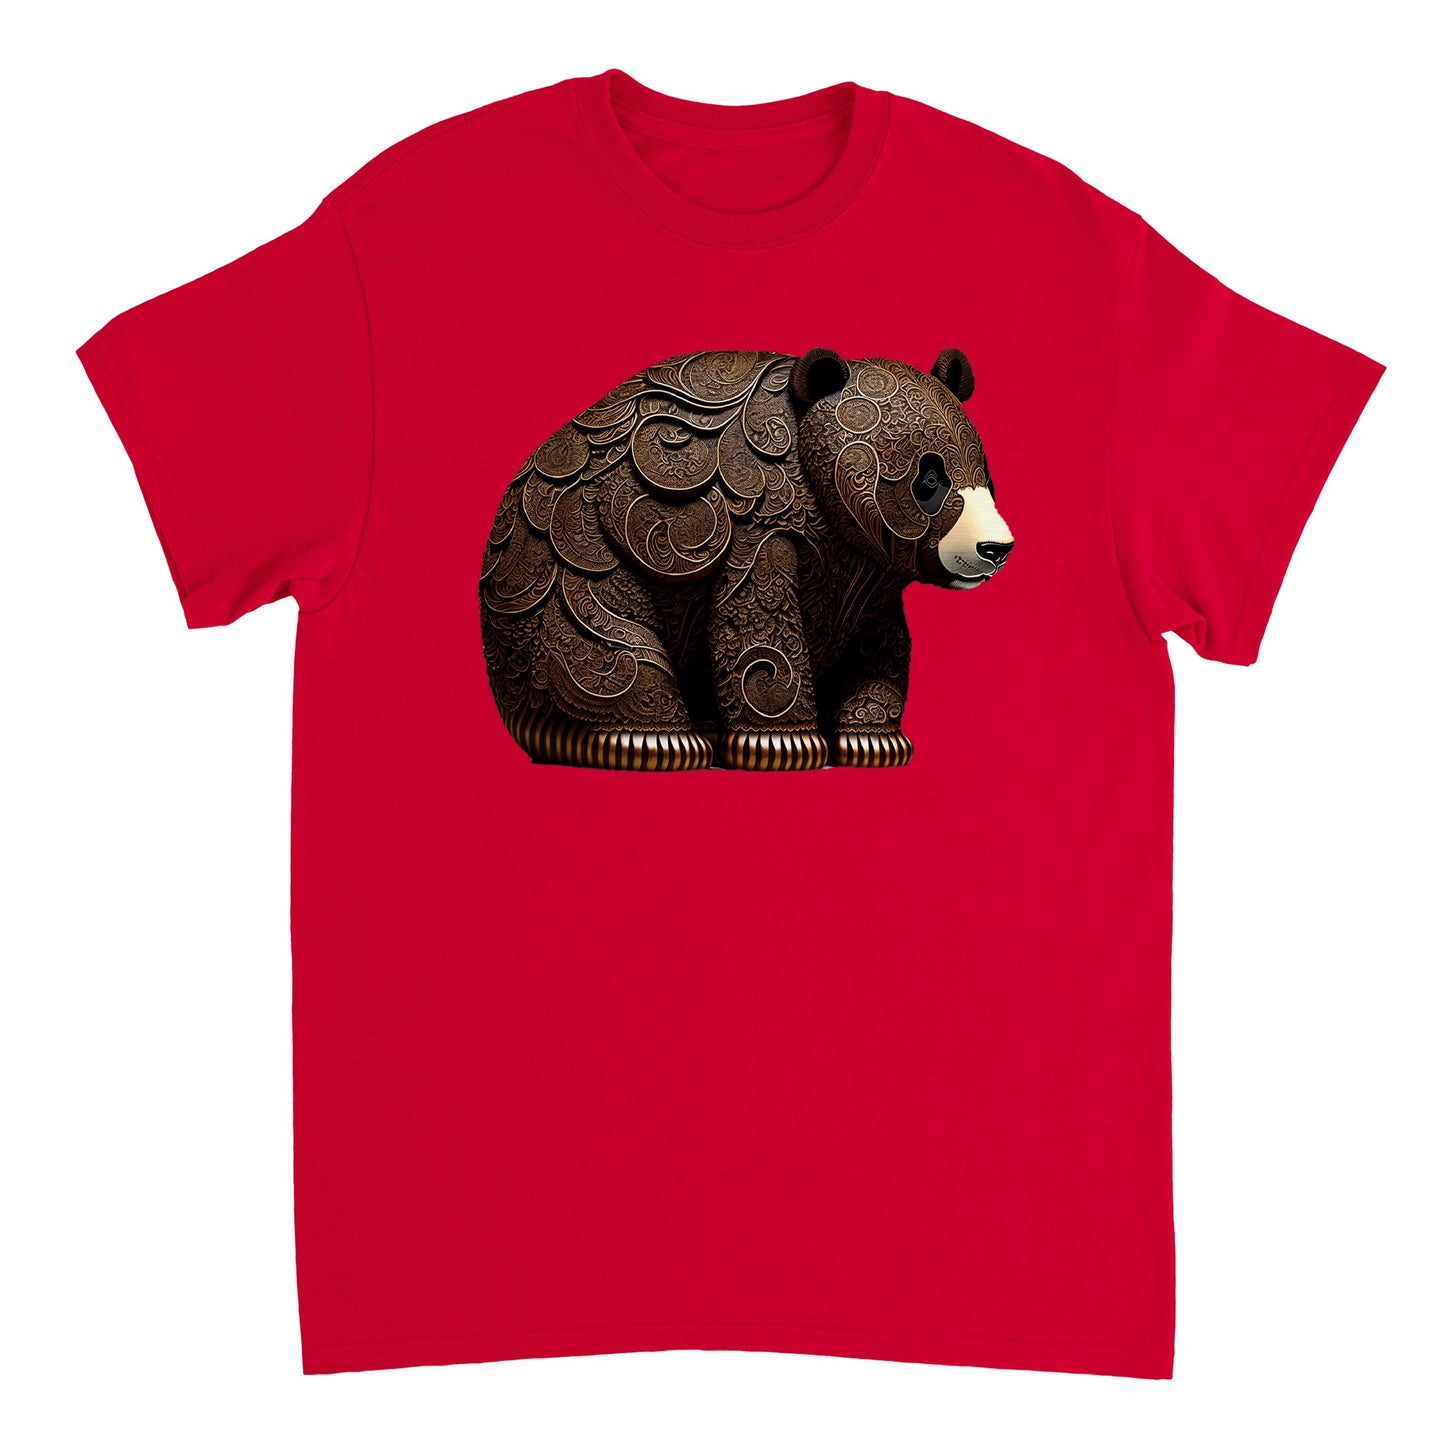 3D Wooden Animal Art - Heavyweight Unisex Crewneck T-shirt 22